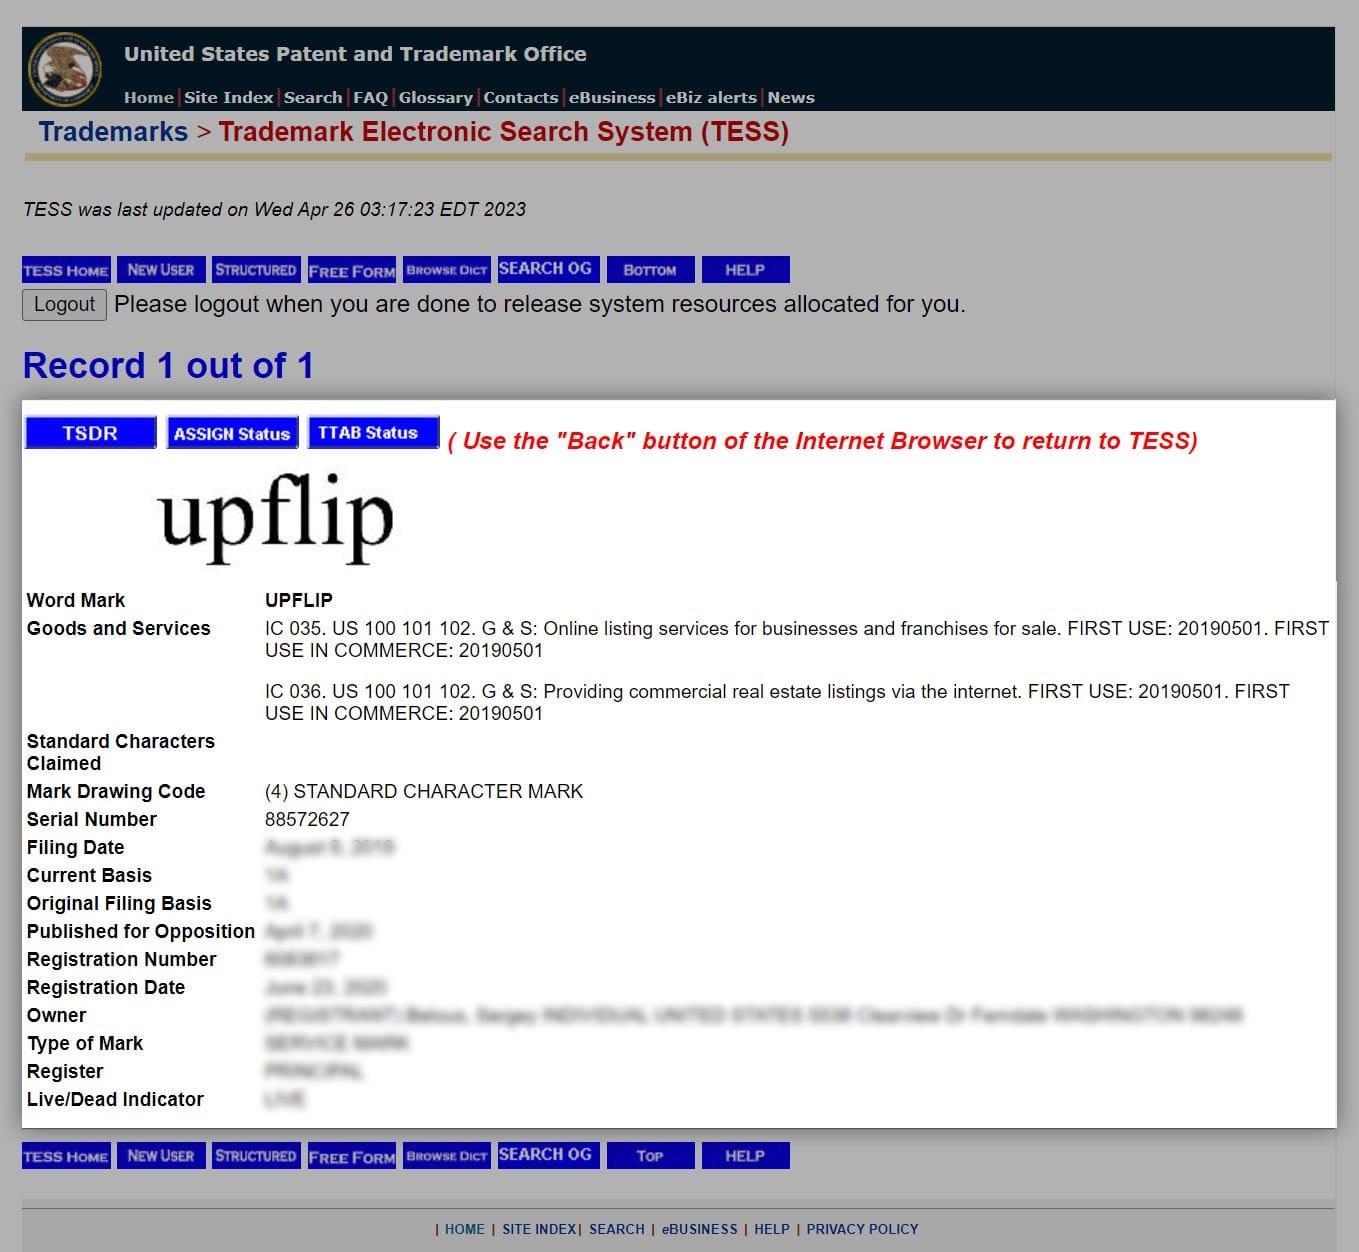 screenshot of upflip trademark from USPTO website